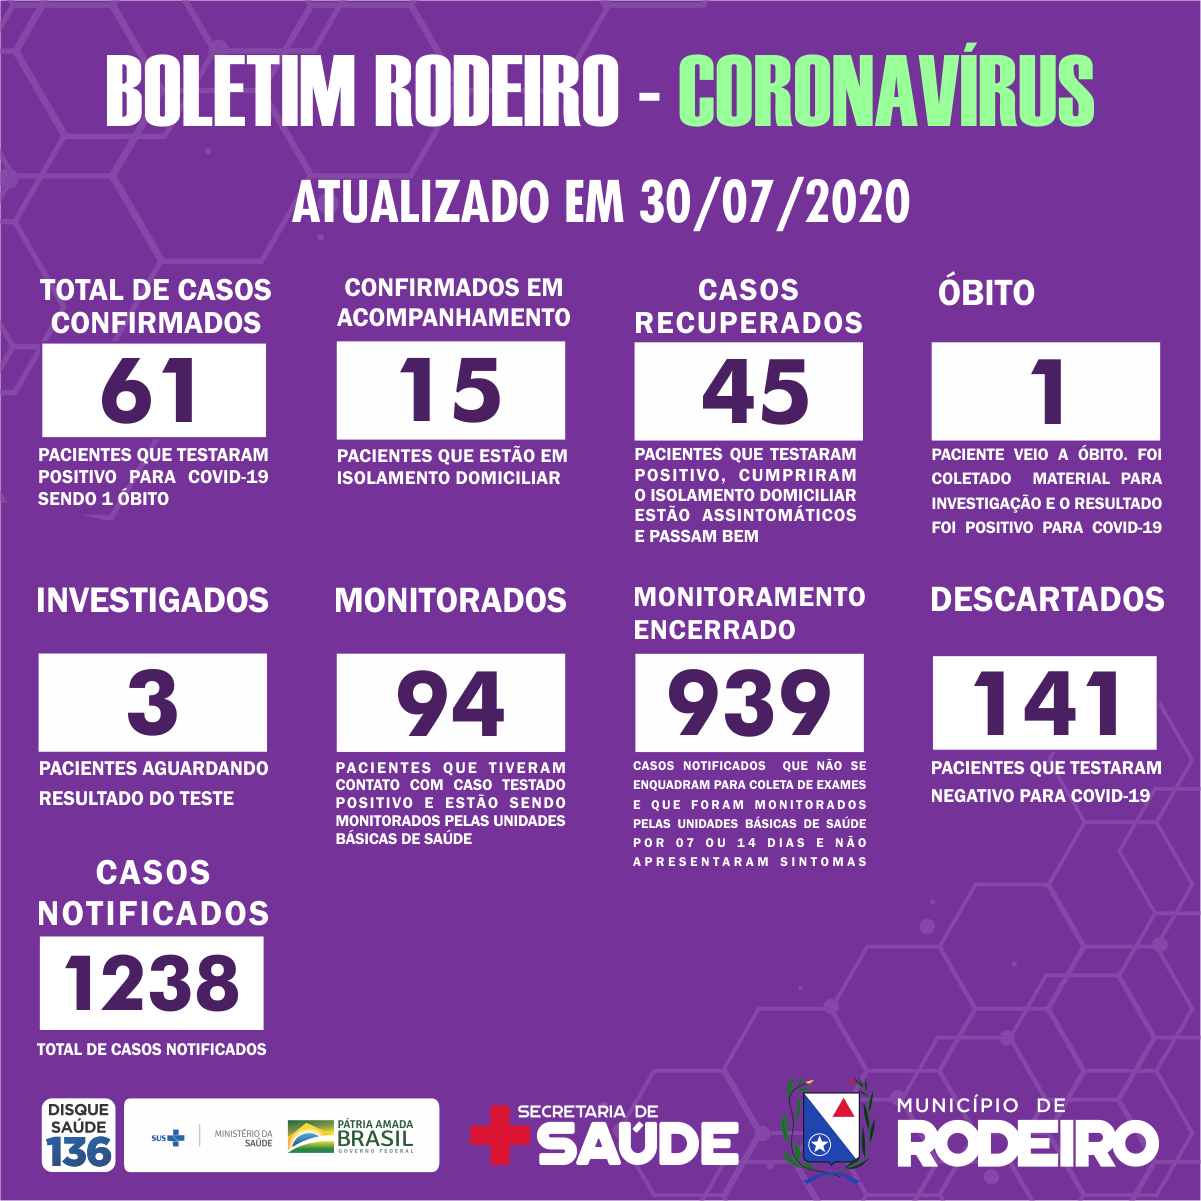 Boletim Epidemiológico do Município de Rodeiro coronavírus, atualizado em 30/07/2020